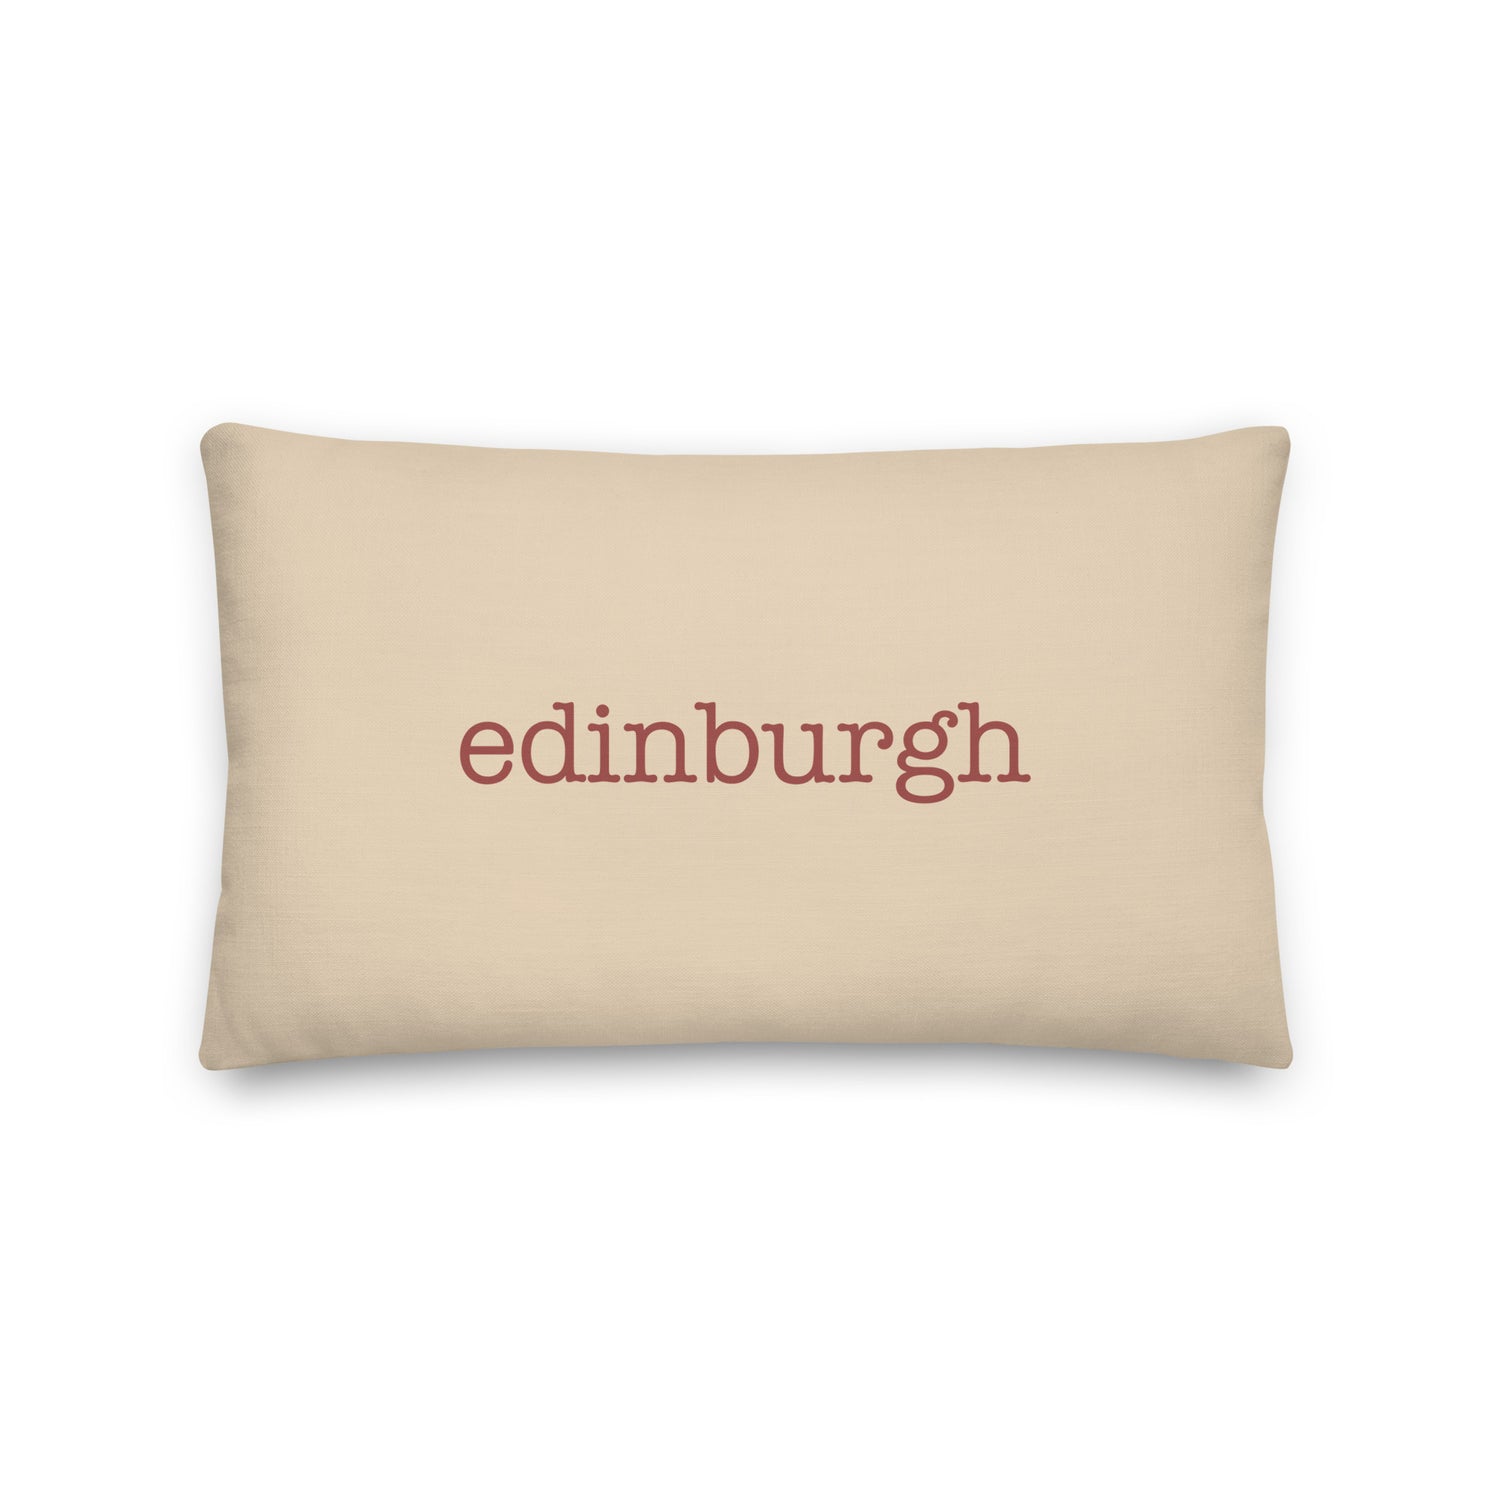 Edinburgh Scotland Pillows and Blankets • EDI Airport Code